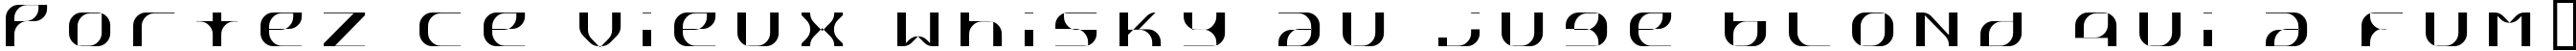 Пример написания шрифтом Rеttpick текста на французском